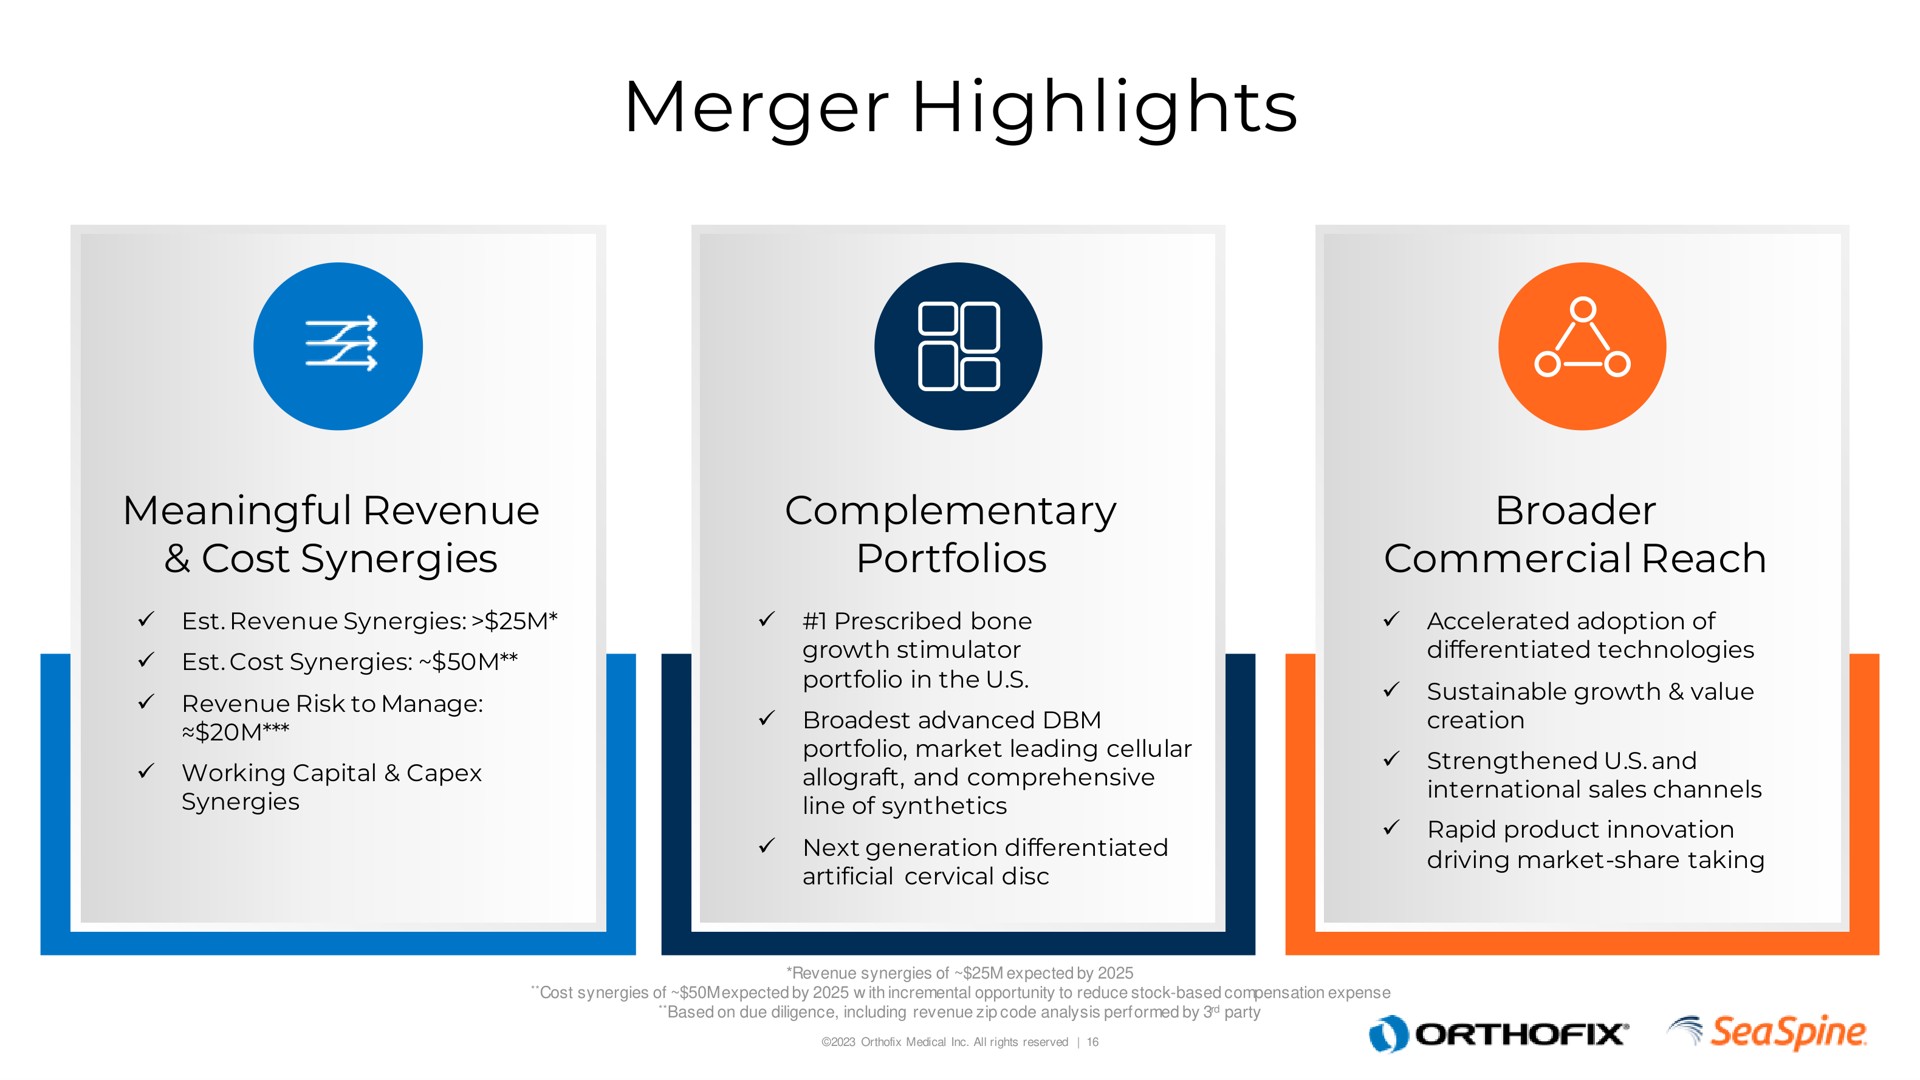 merger highlights | Orthofix